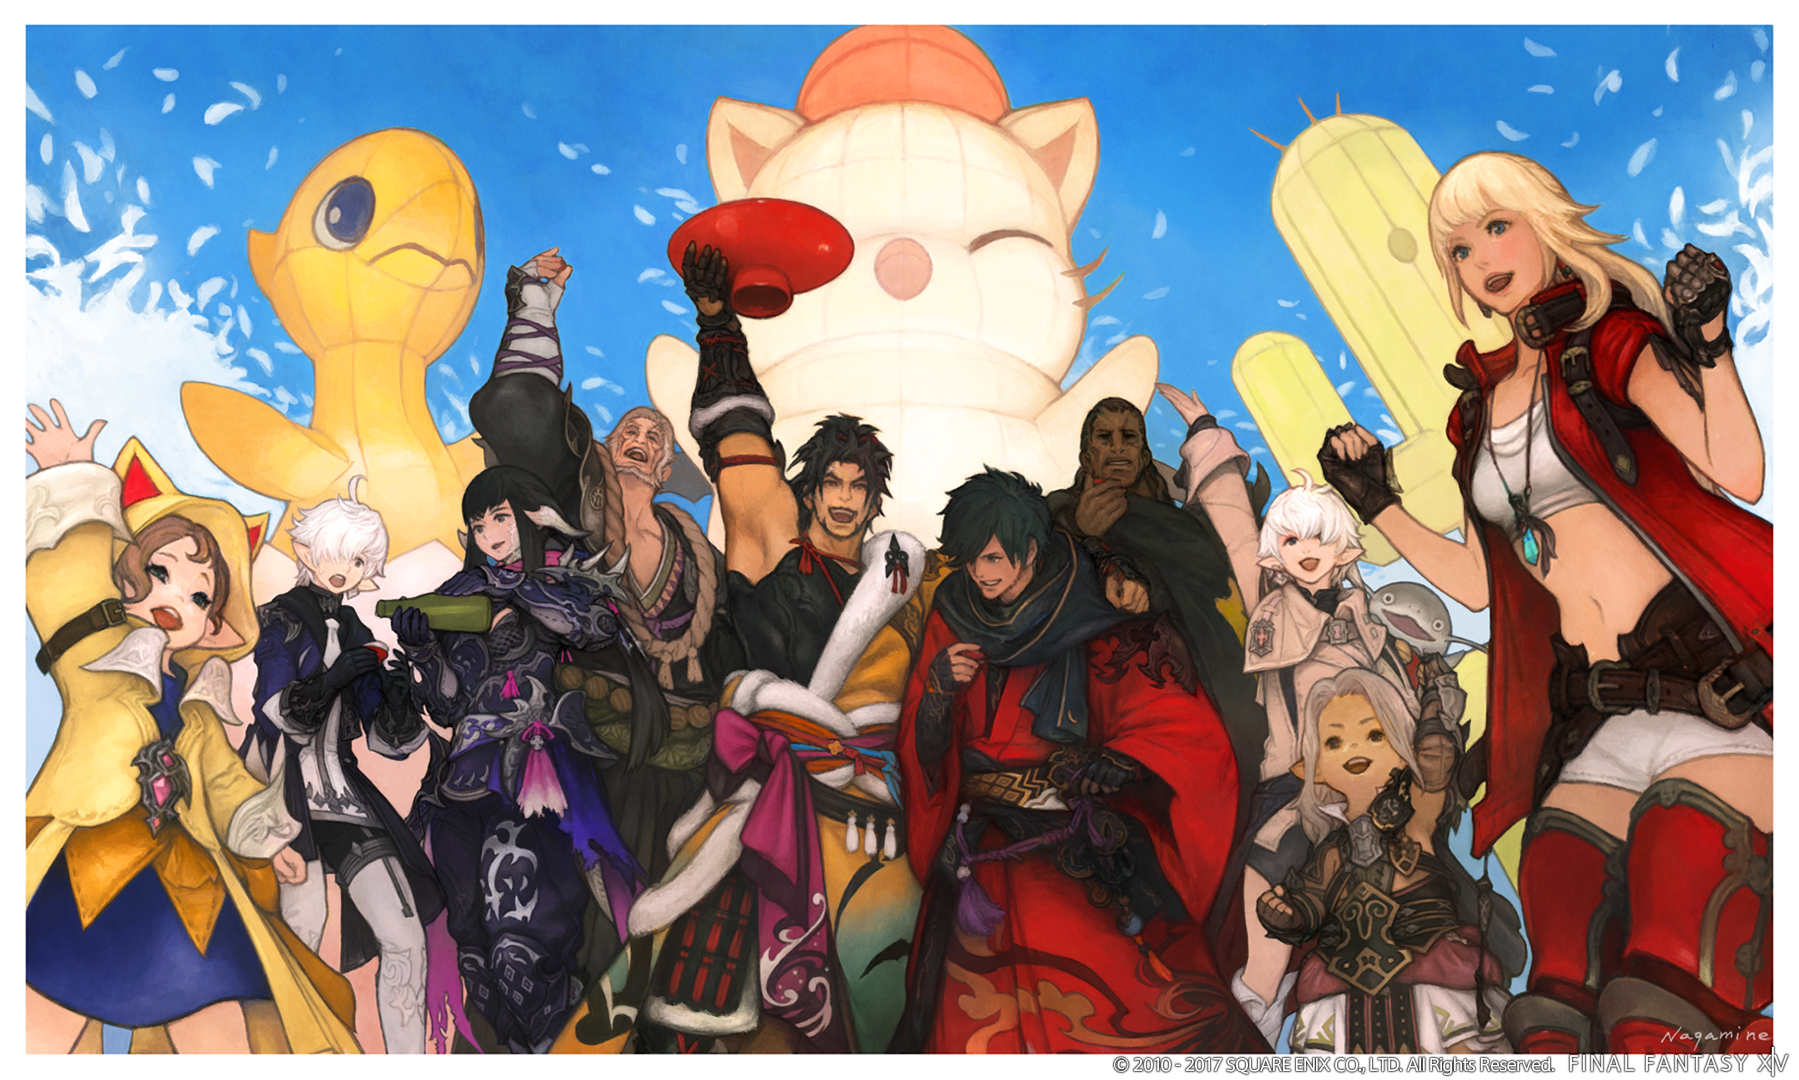 Final Fantasy XIV Patch 4.1